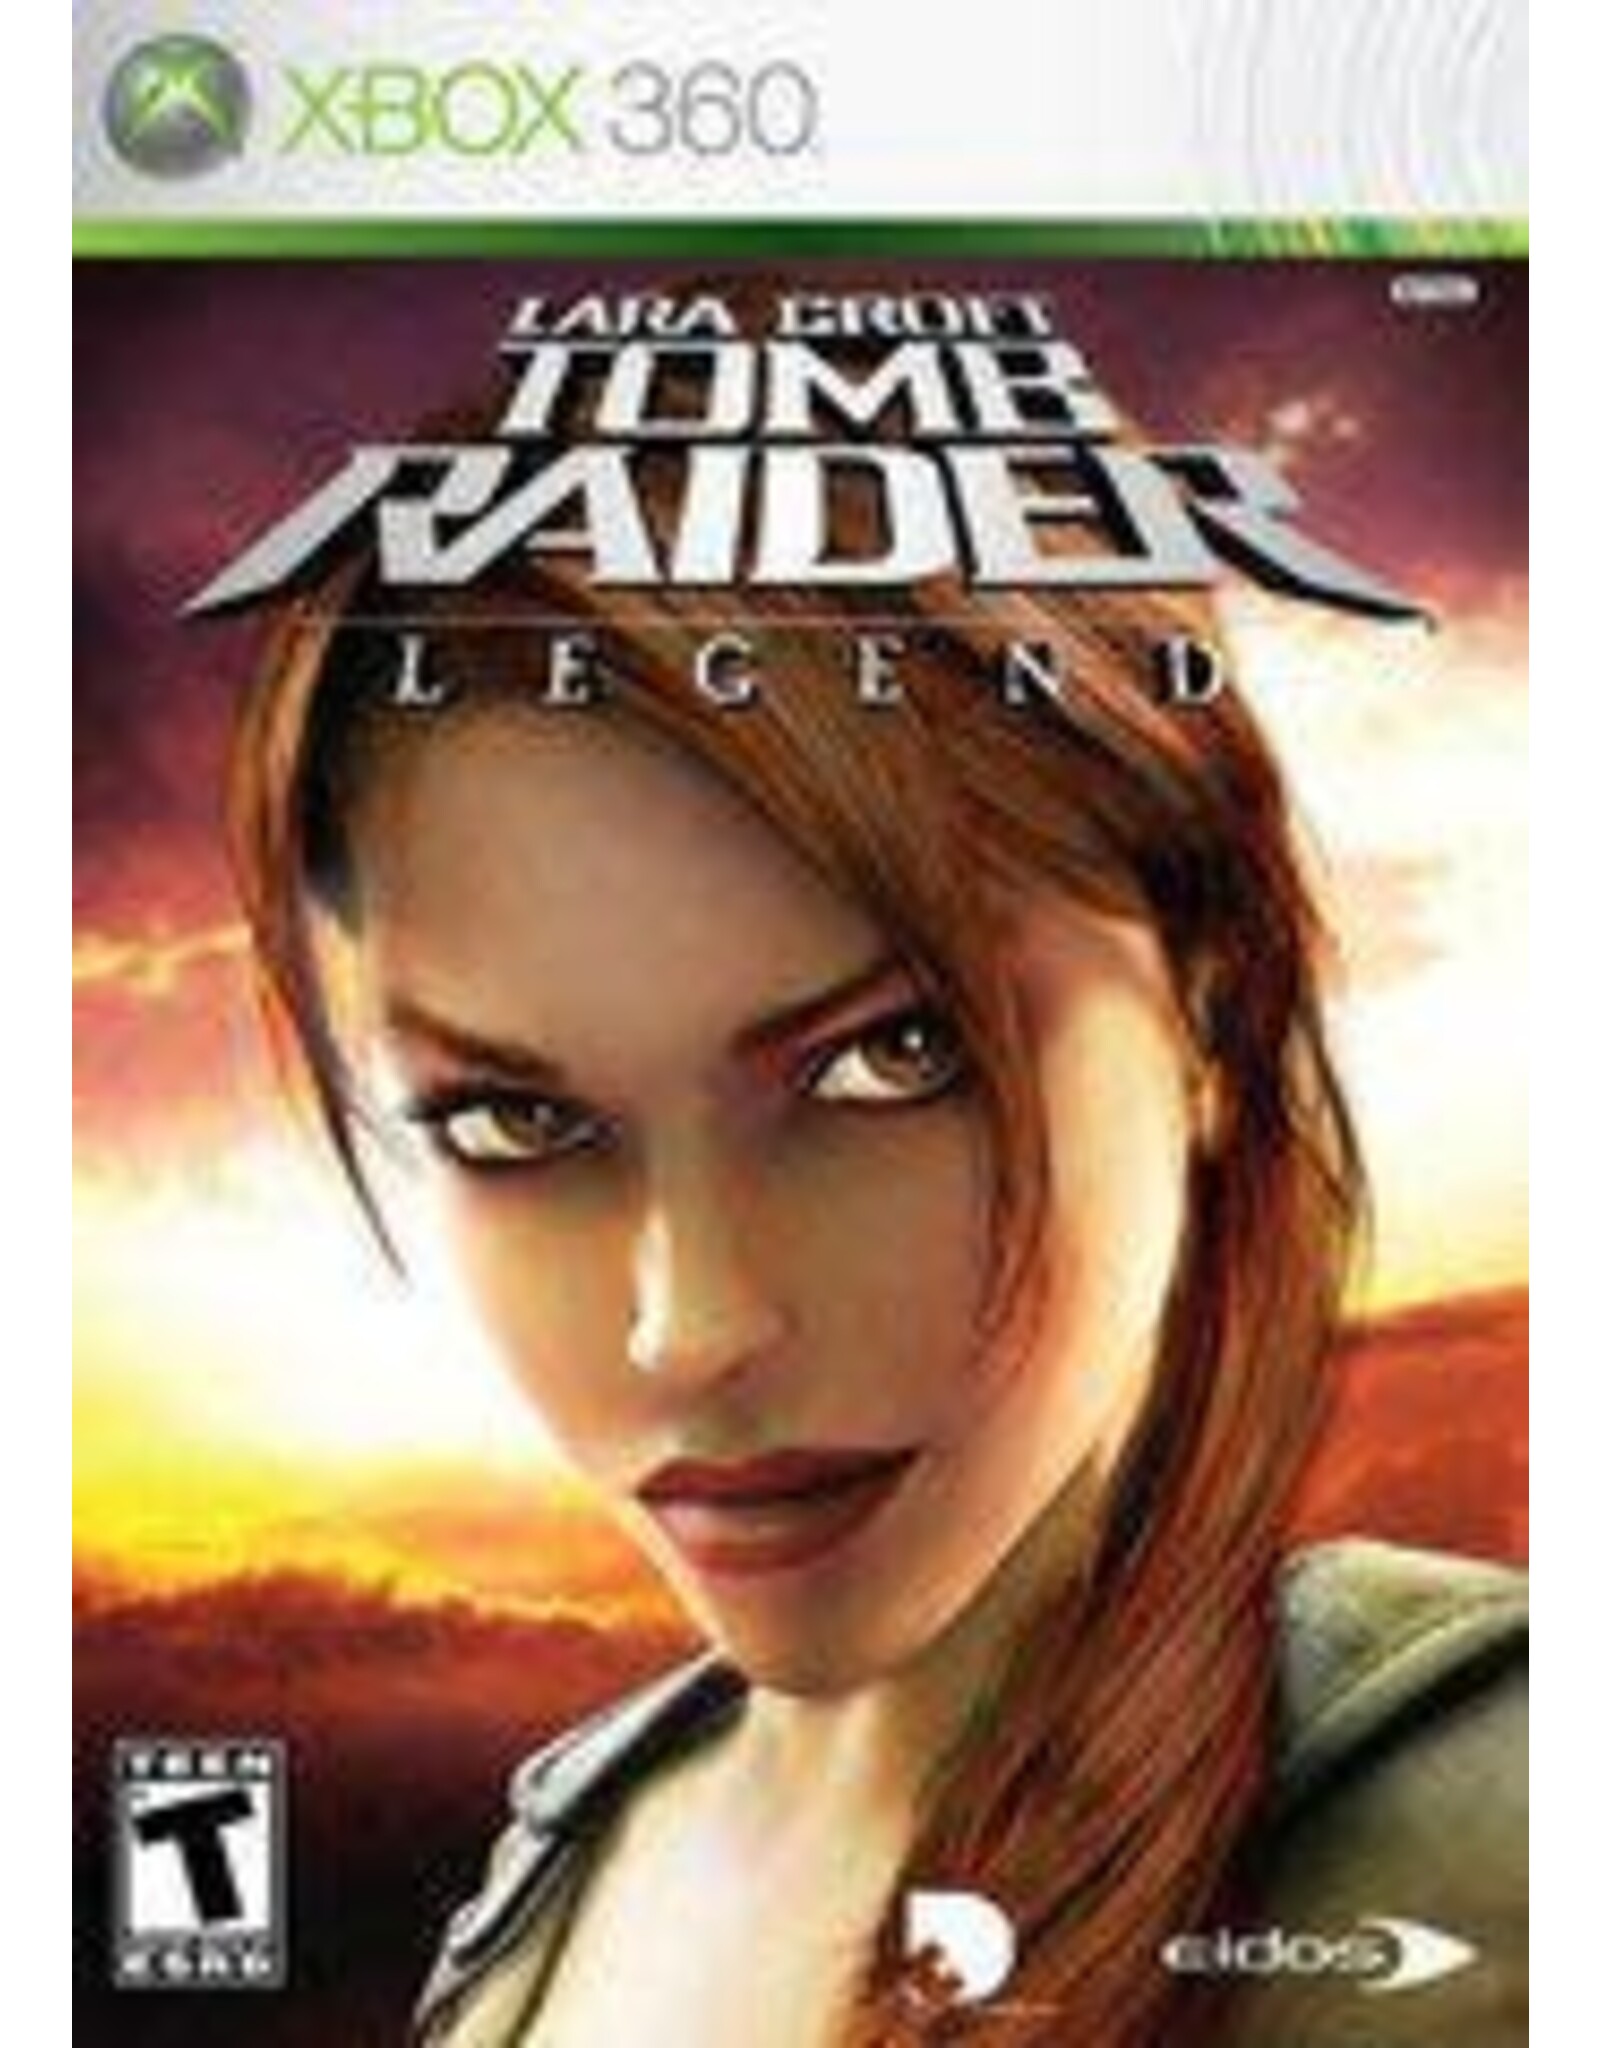 Xbox 360 Tomb Raider Legend (No Manual)